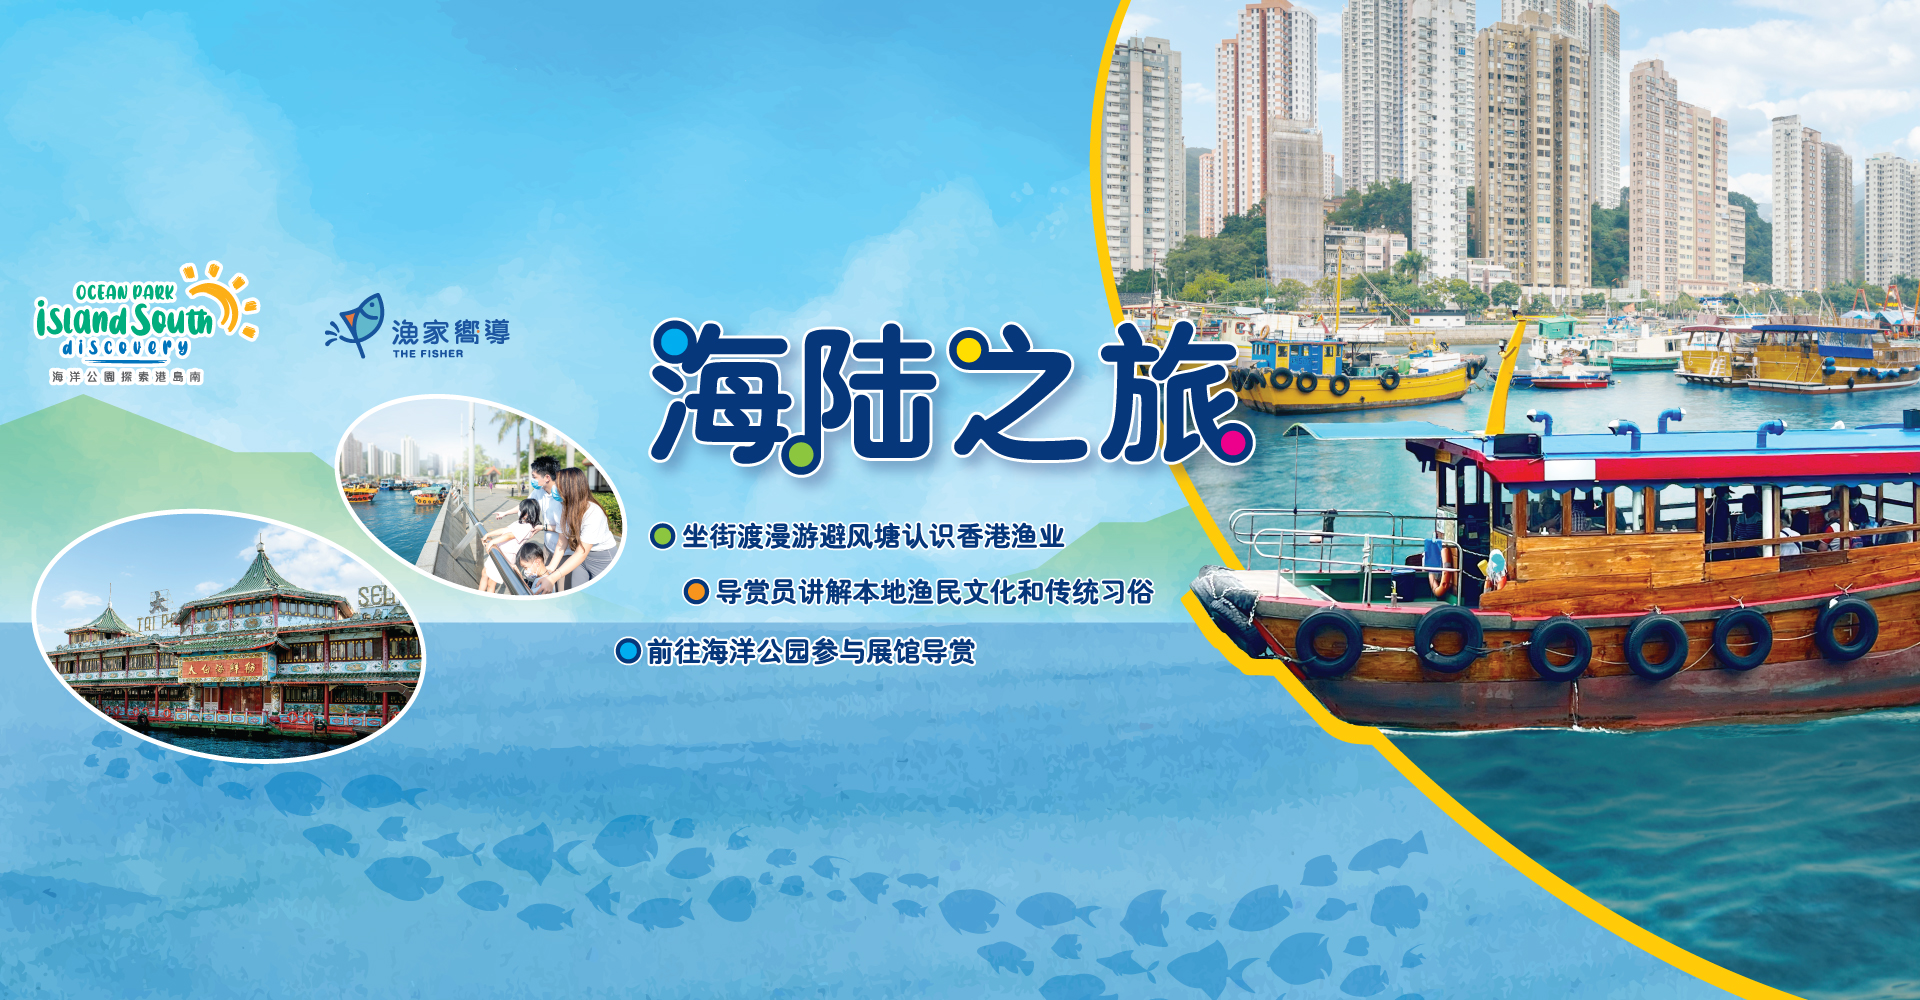 http://media.oceanpark.com.hk/files/s3fs-public/land-sea-guided-tour-innerpage-banner-desktop-sc.jpg